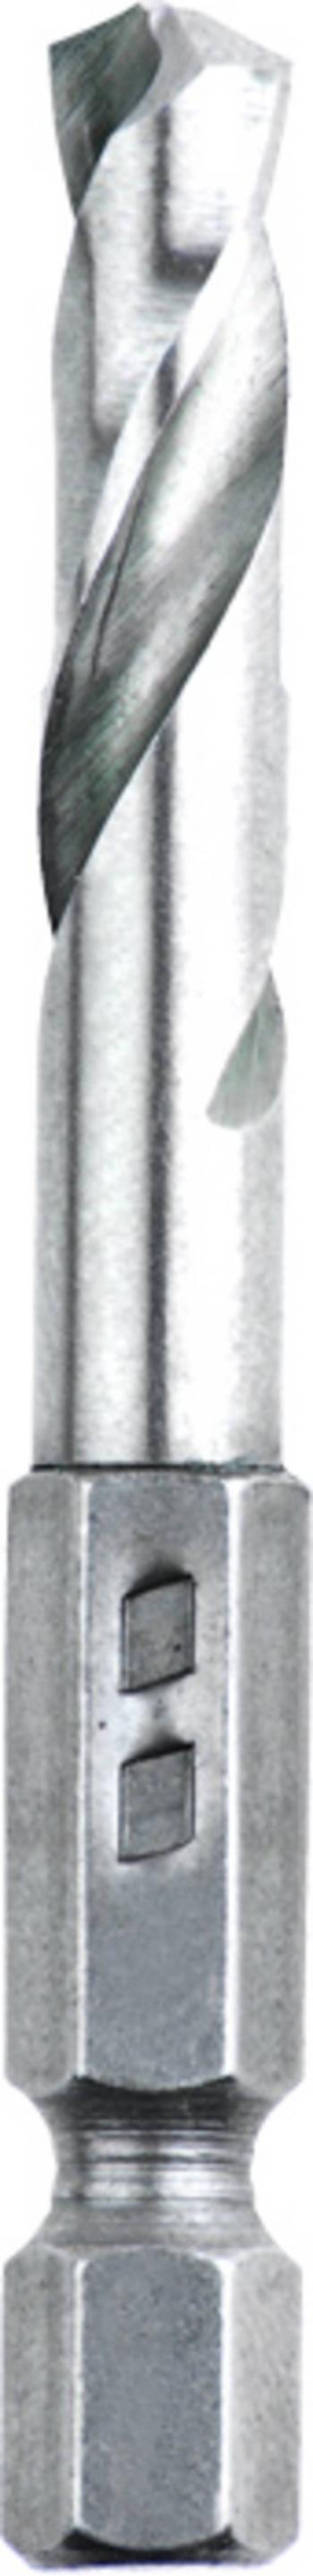 kwb 421102  kovový špirálový vrták 1 ks      1 ks